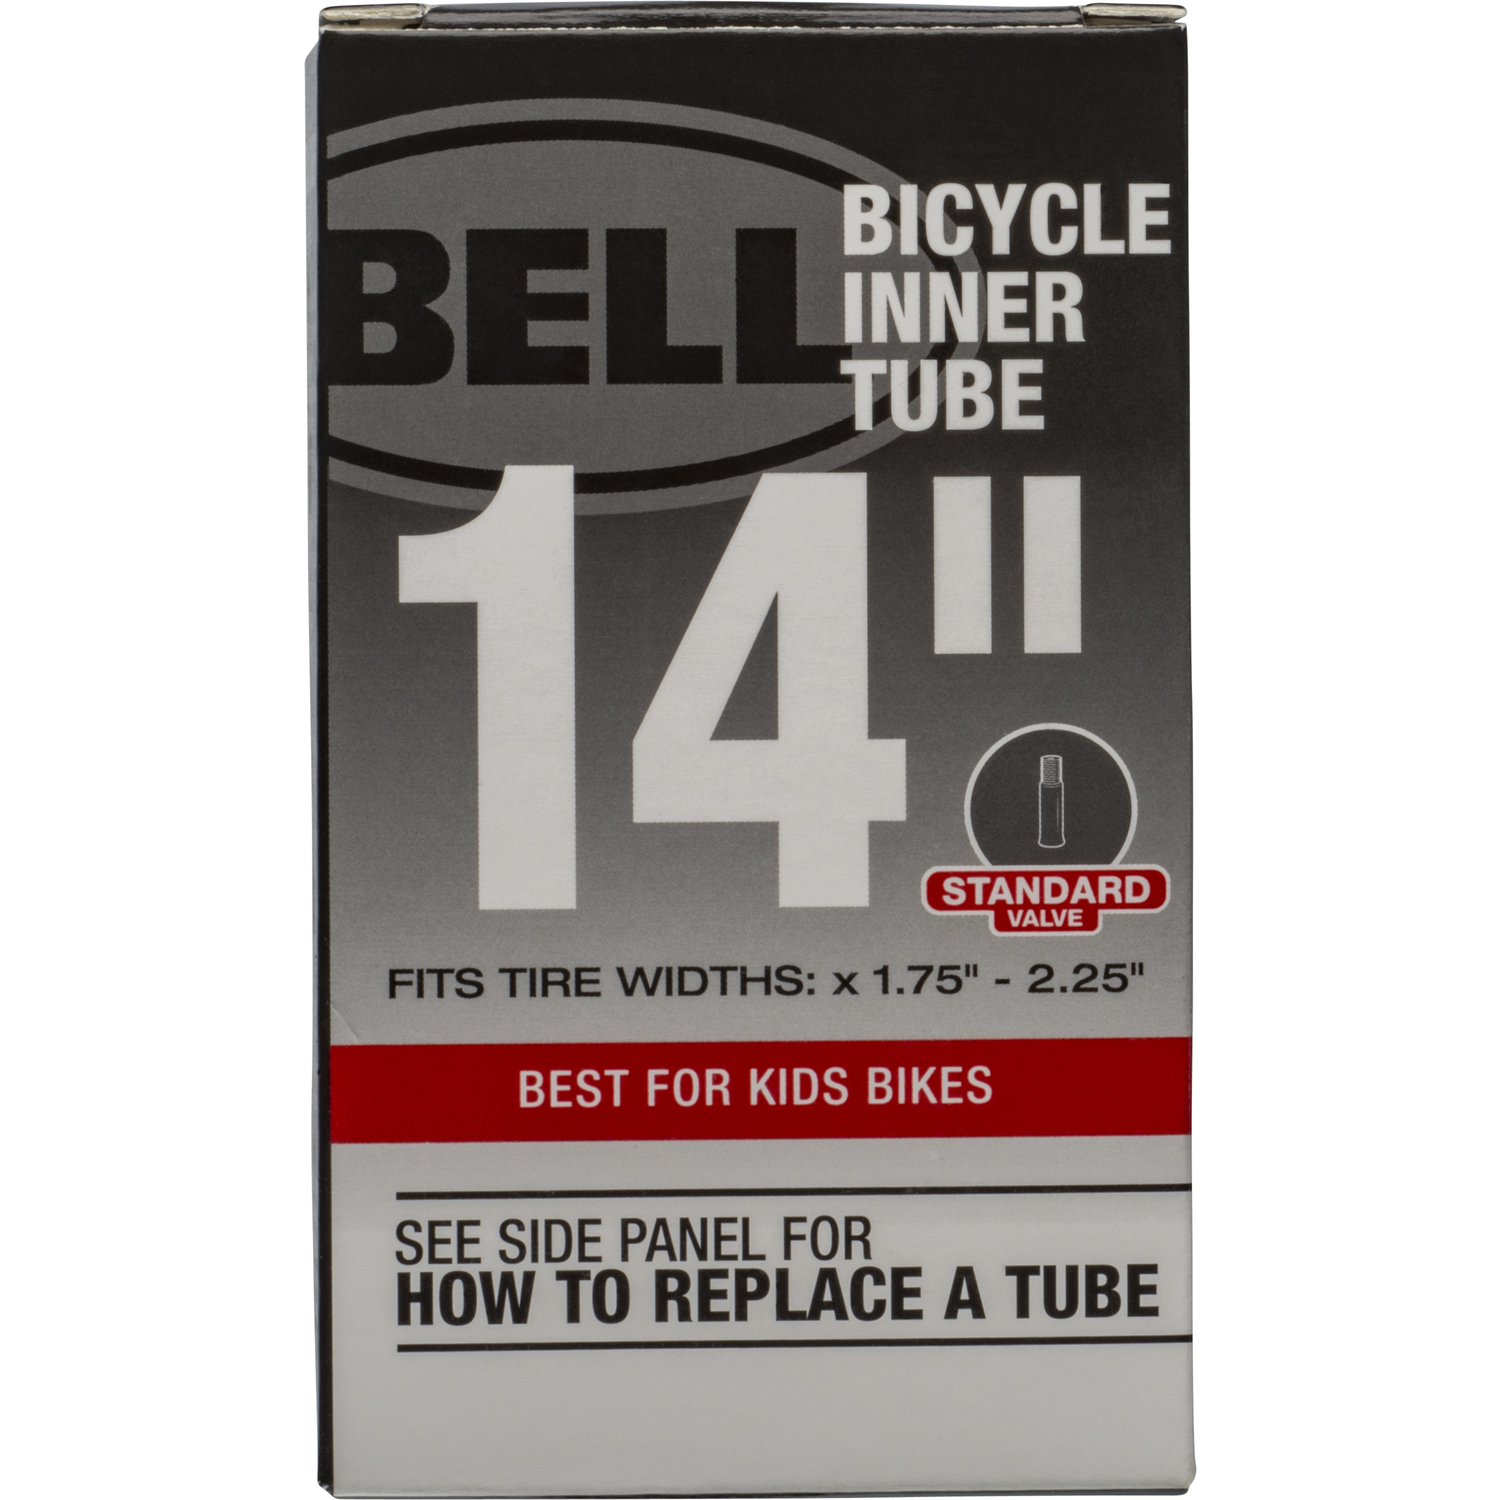 bike tire inner tubes near me